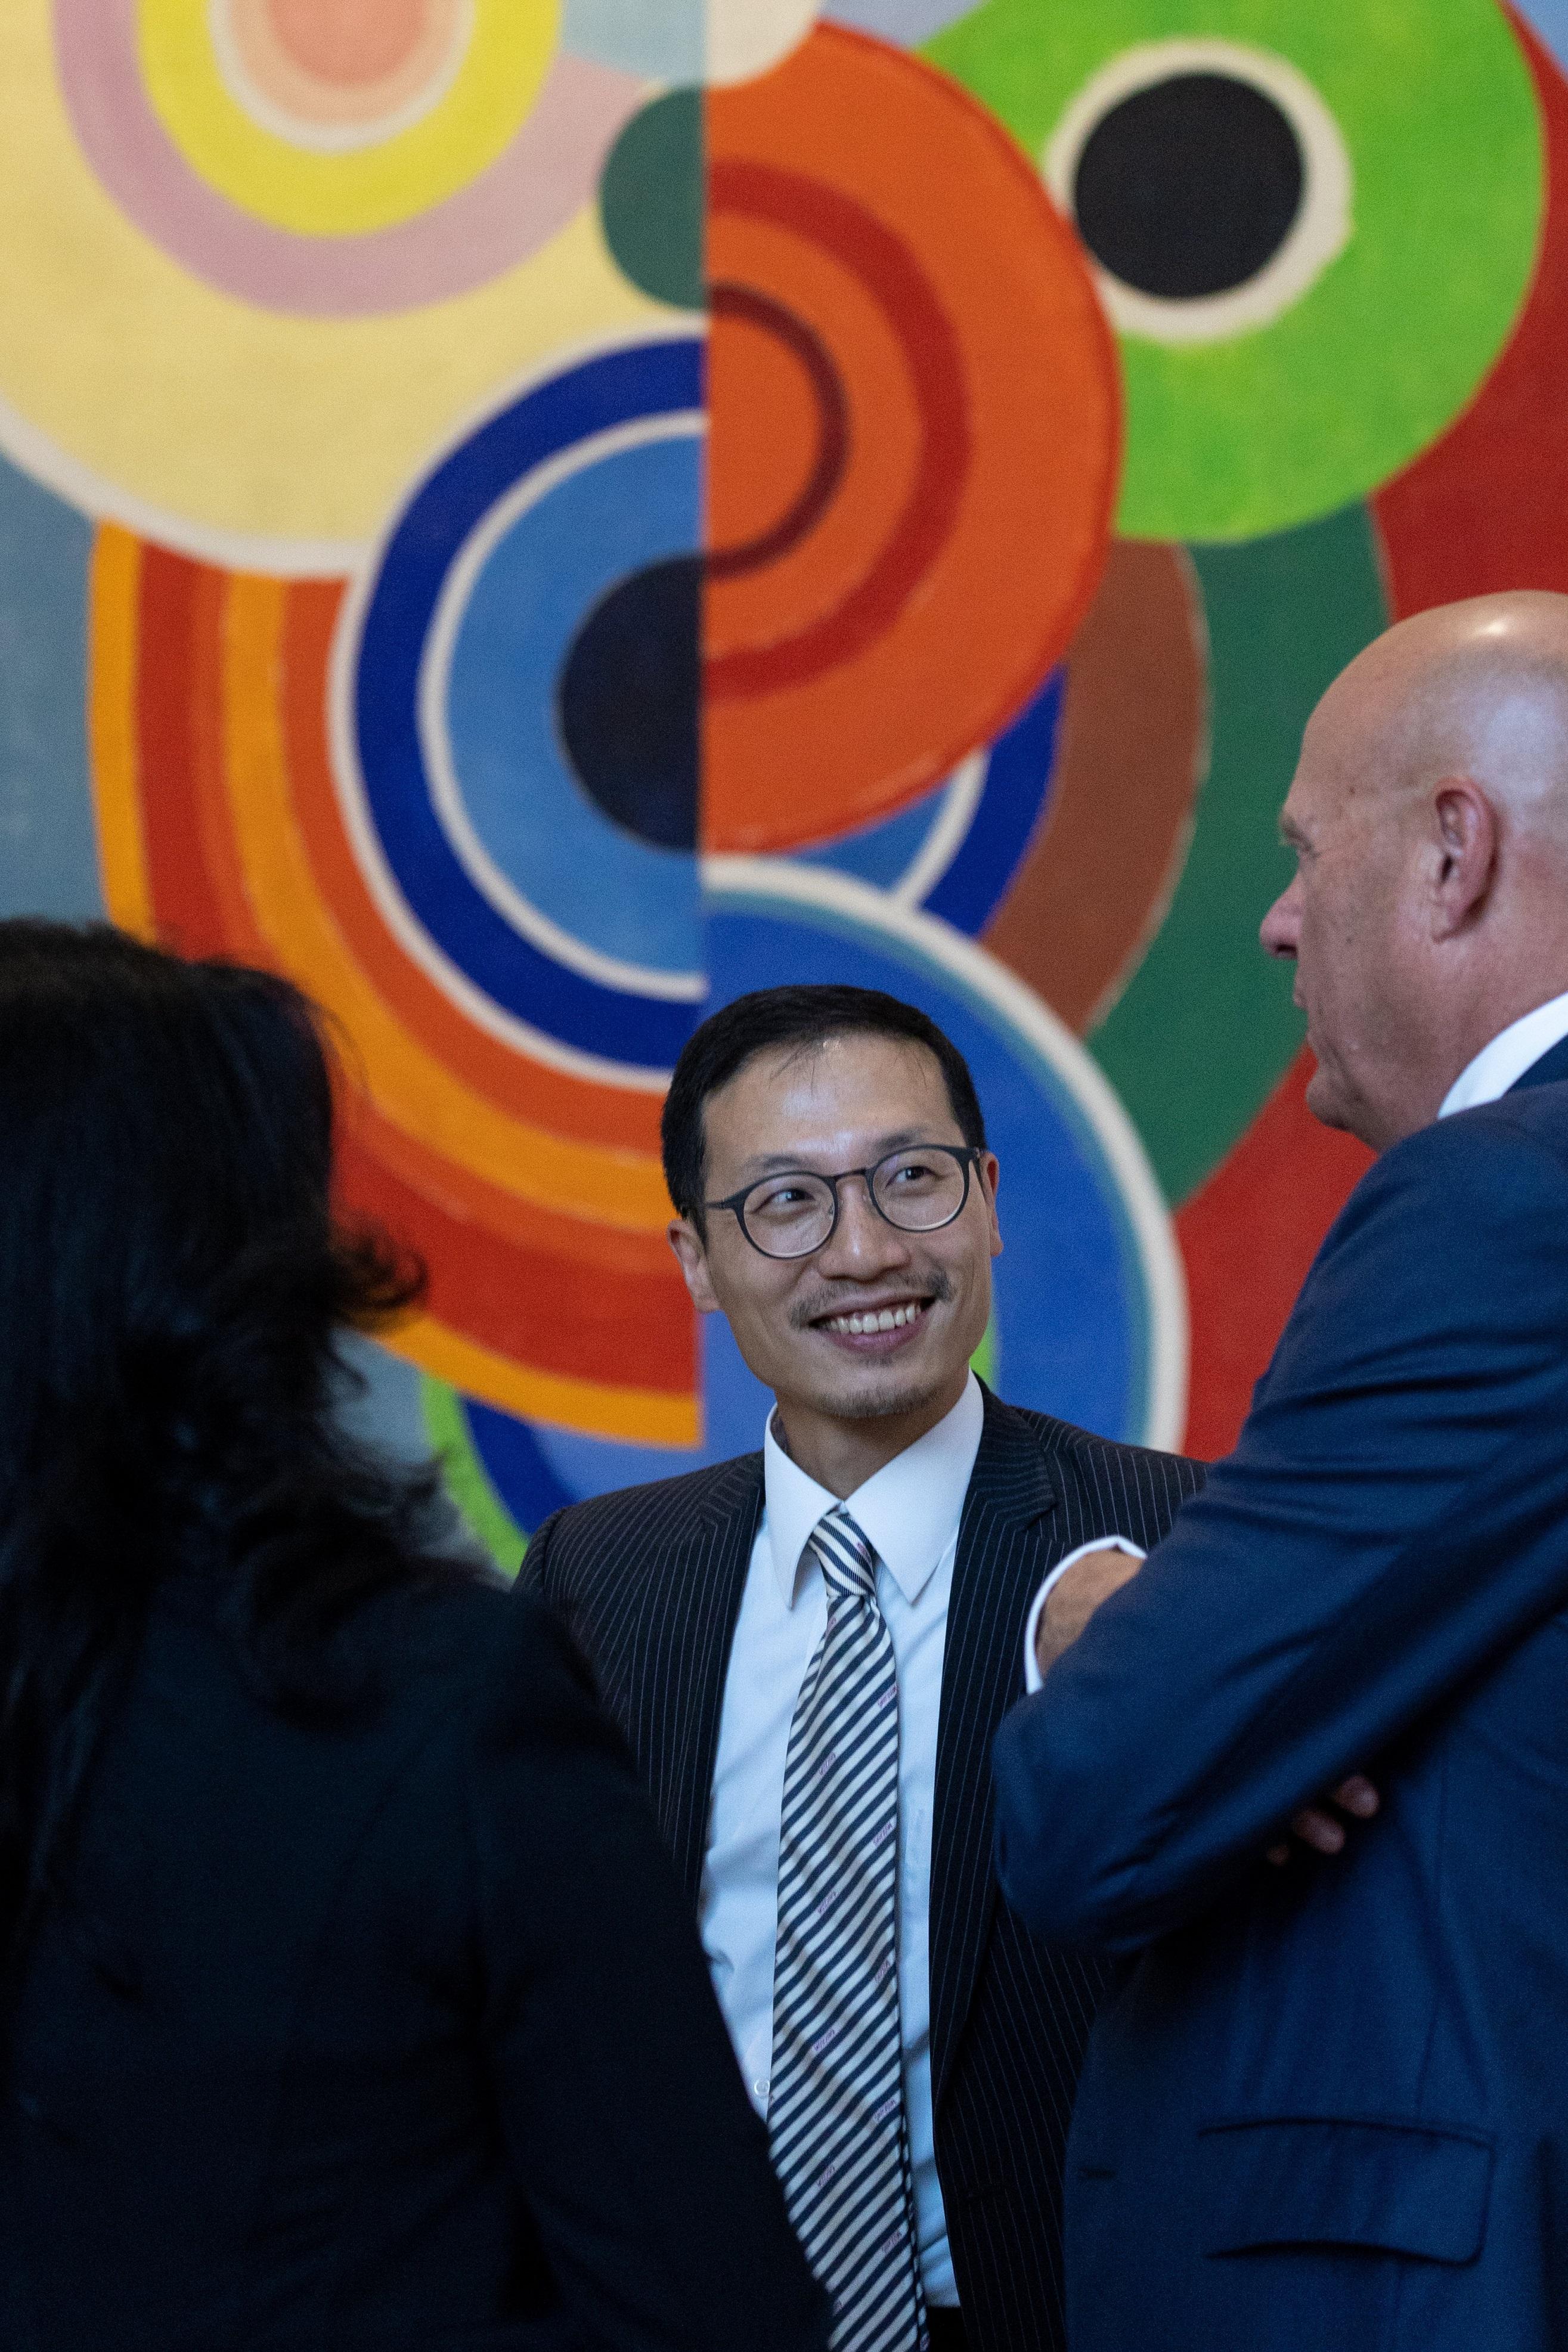 香港贸易发展局欧洲、中亚及以色列首席代表朱耀昌在六月二十七日（巴黎时间）出席在法国巴黎举行的庆祝香港特别行政区成立二十五周年酒会，与在场宾客交流。香港贸易发展局为活动协办机构。